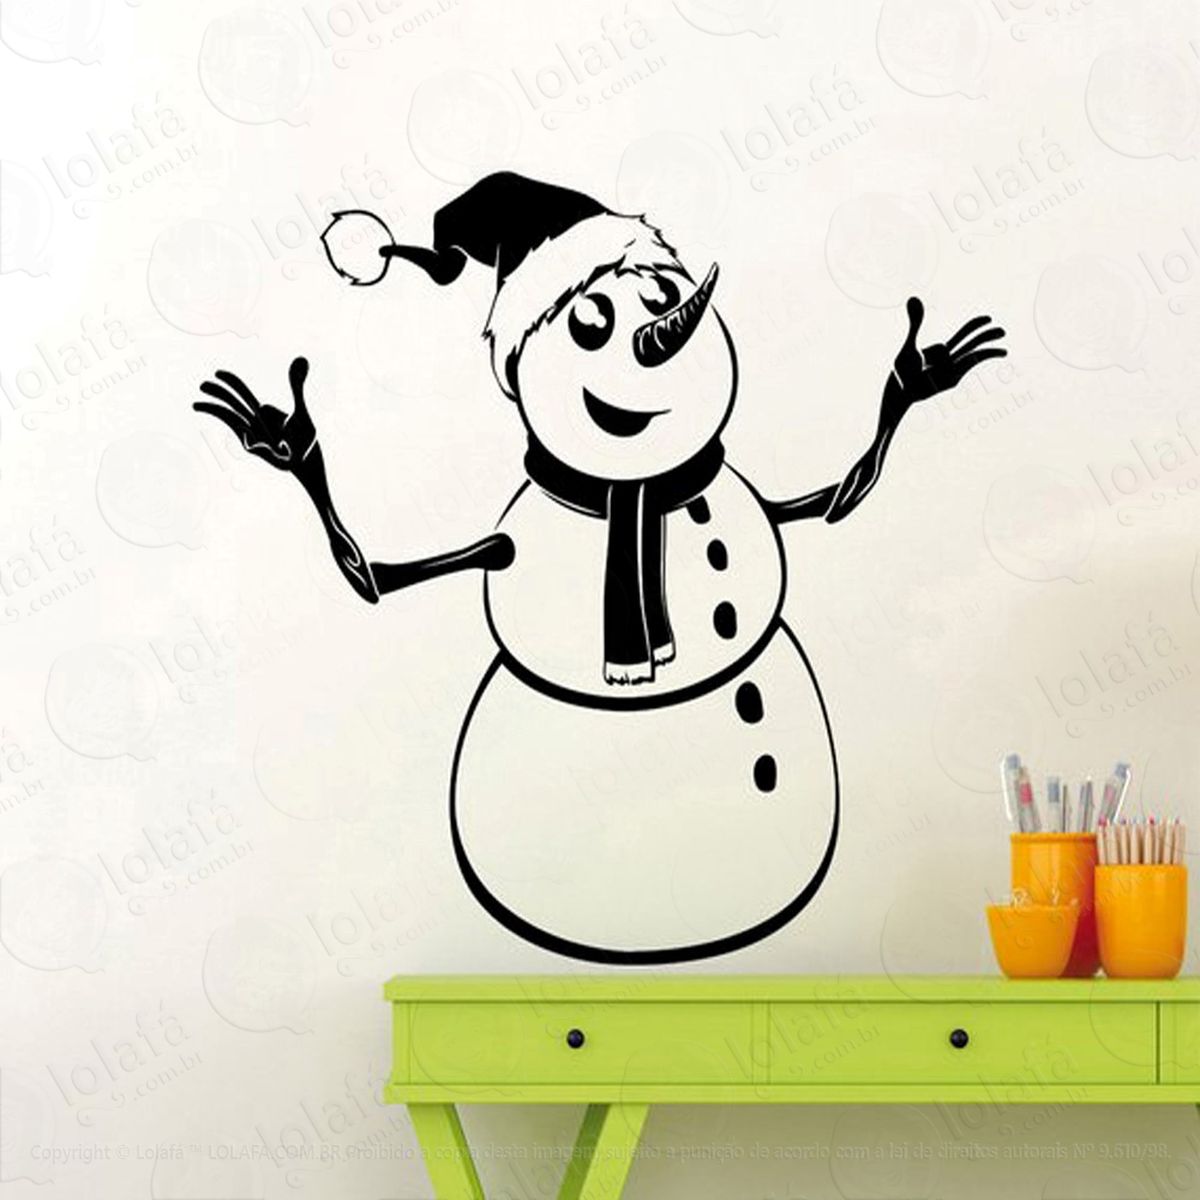 boneco de neve adesivo de natal para vitrine, parede, porta de vidro - decoração natalina mod:52